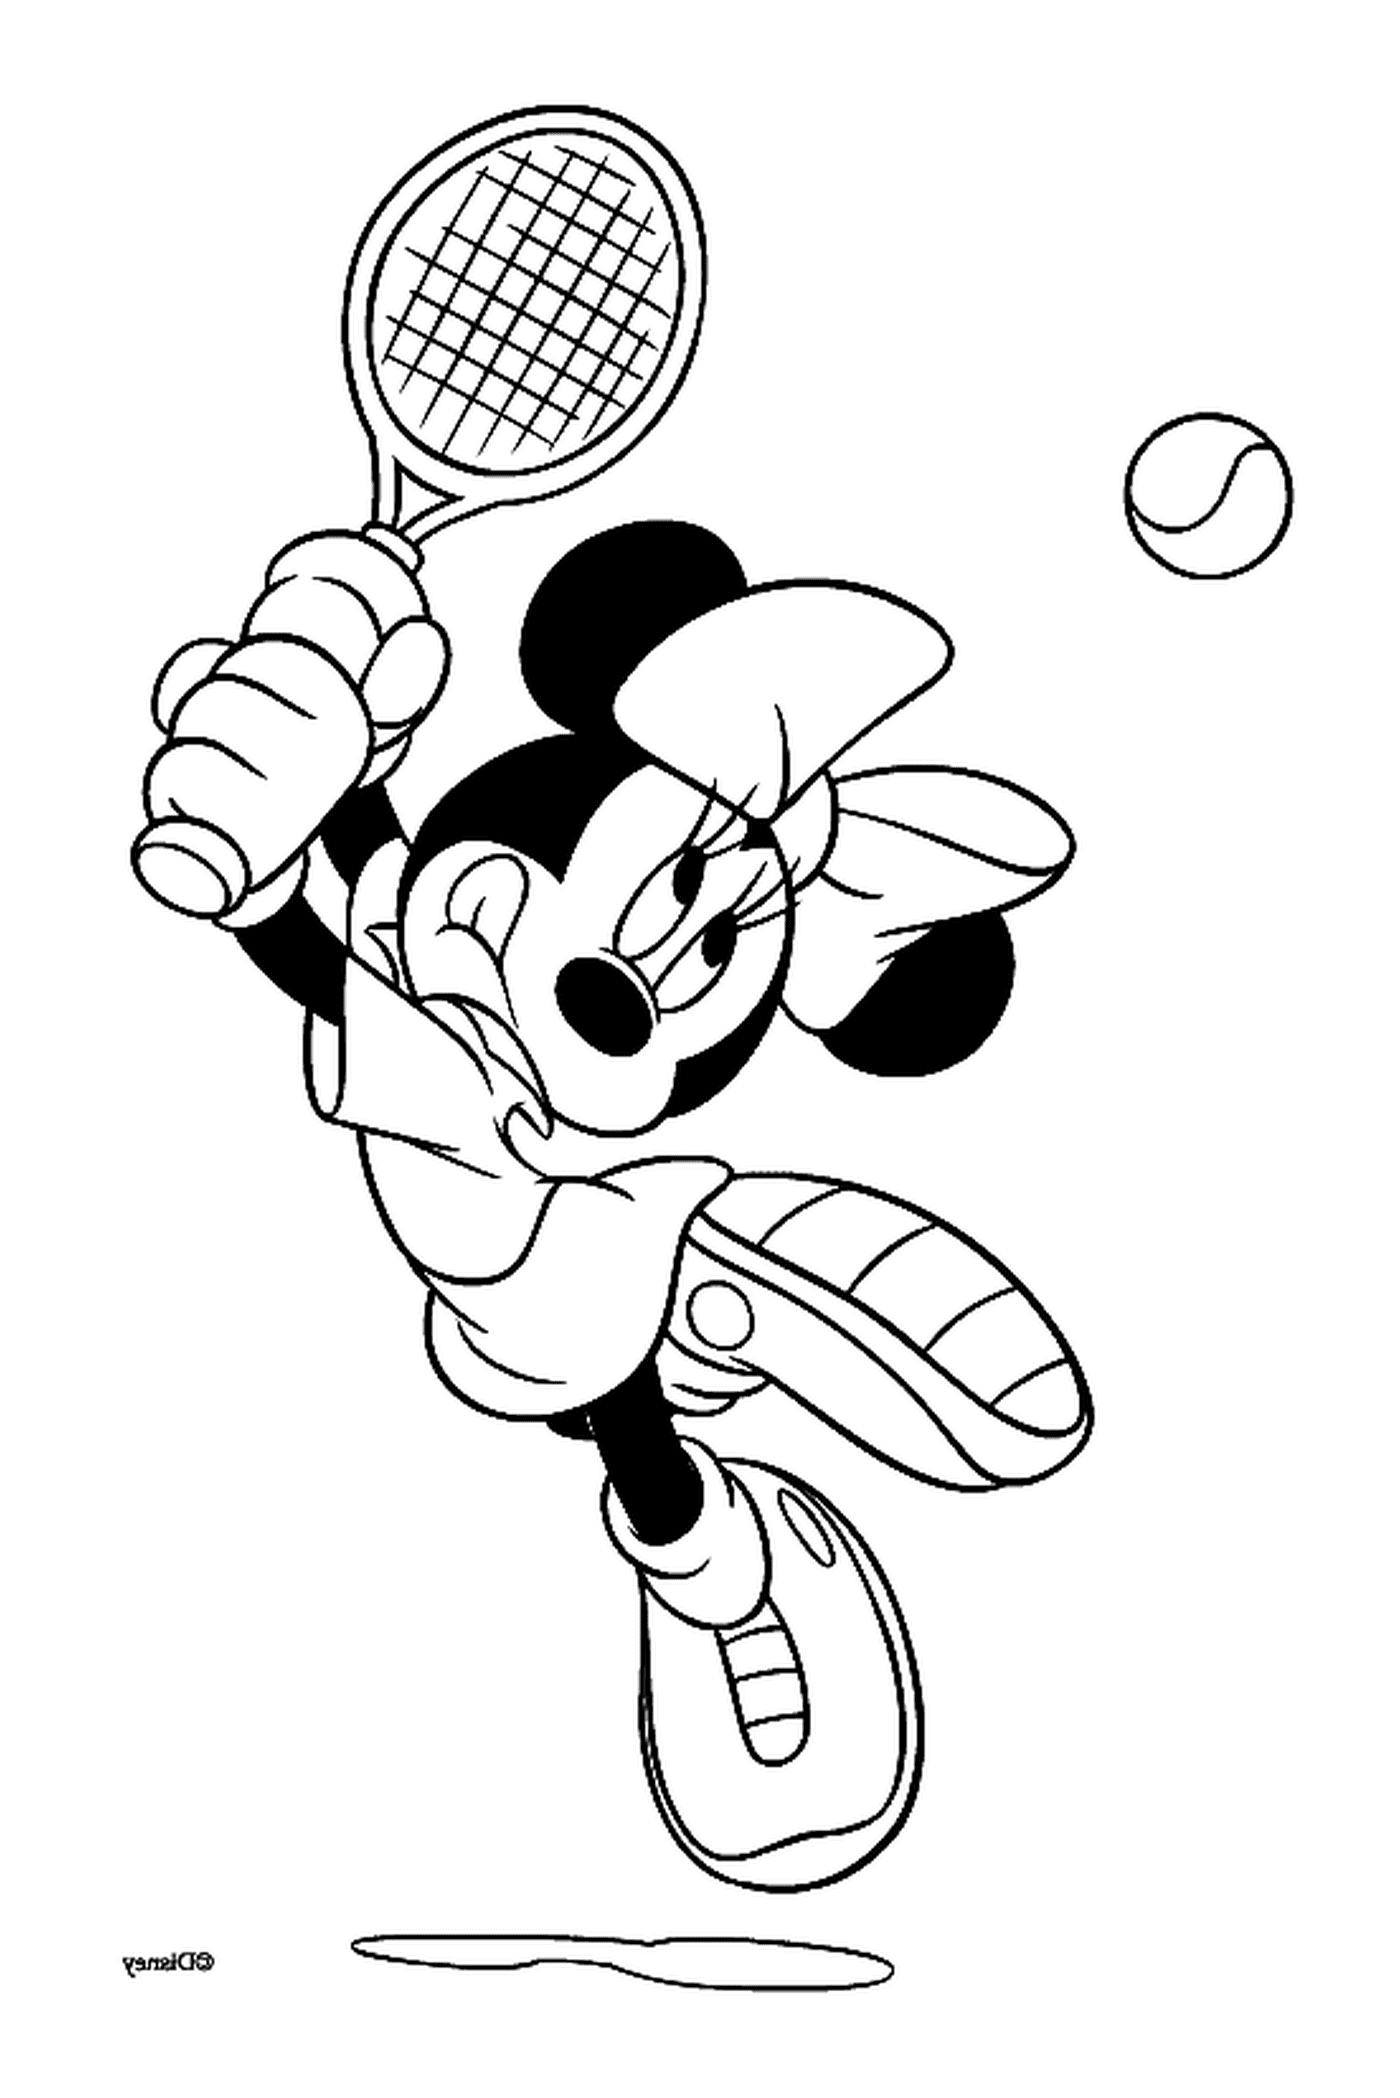  明尼打网球 